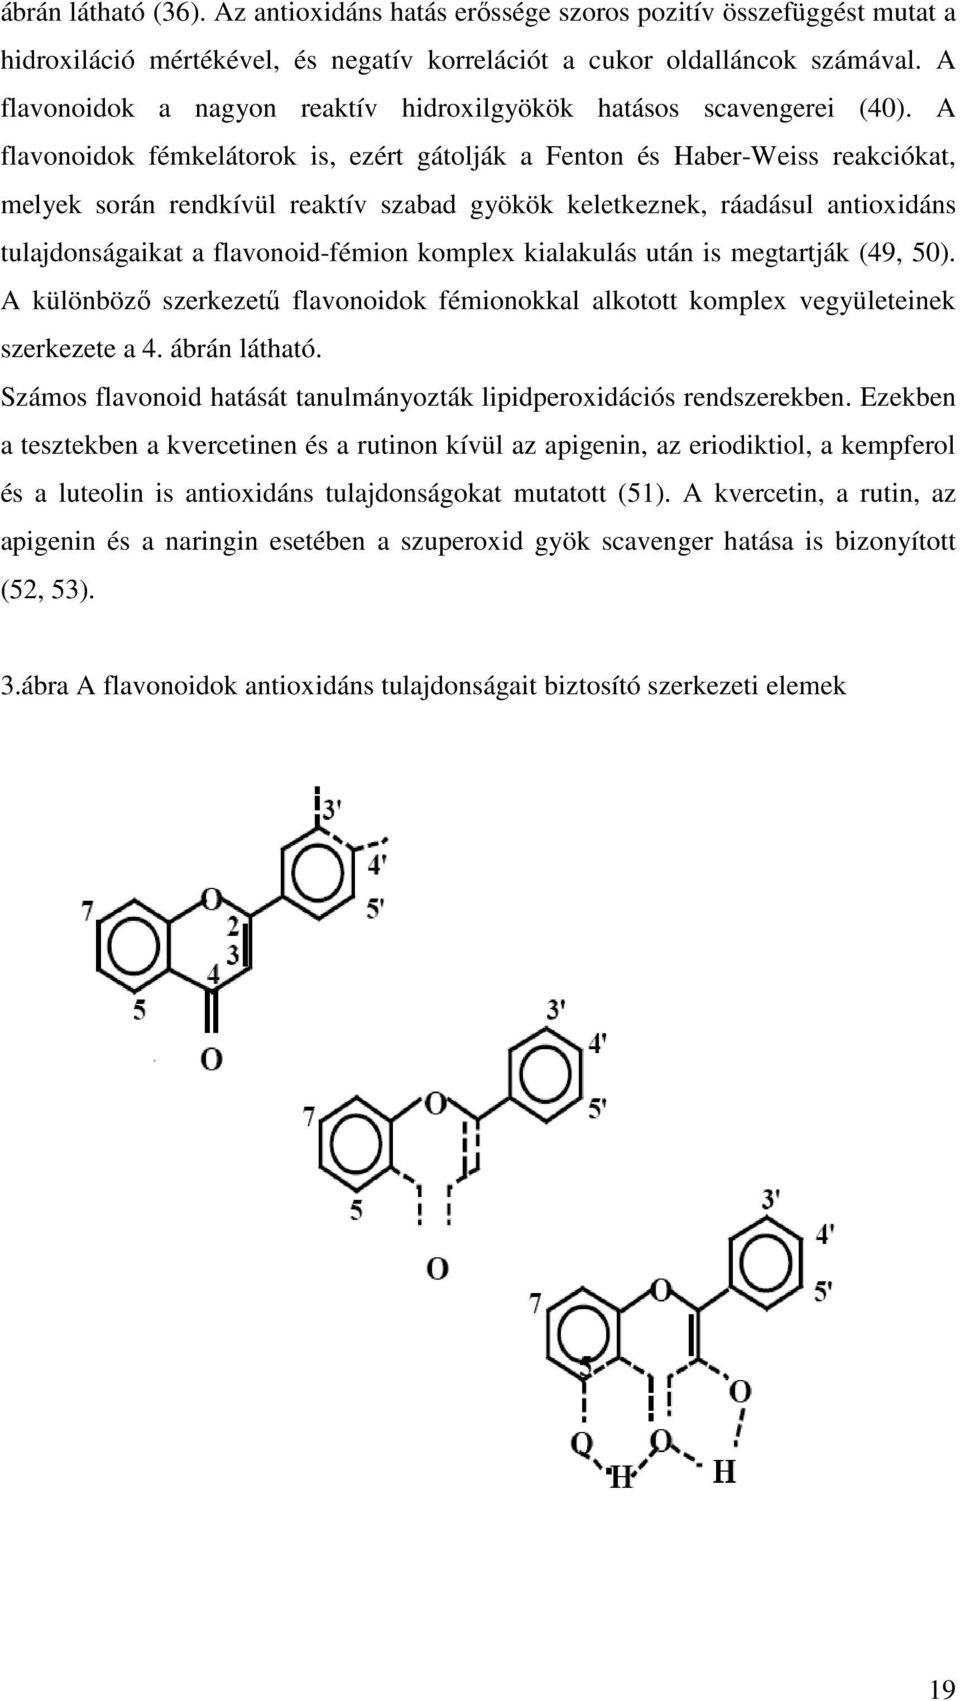 A flavonoidok fémkelátorok is, ezért gátolják a Fenton és Haber-Weiss reakciókat, melyek során rendkívül reaktív szabad gyökök keletkeznek, ráadásul antioxidáns tulajdonságaikat a flavonoid-fémion